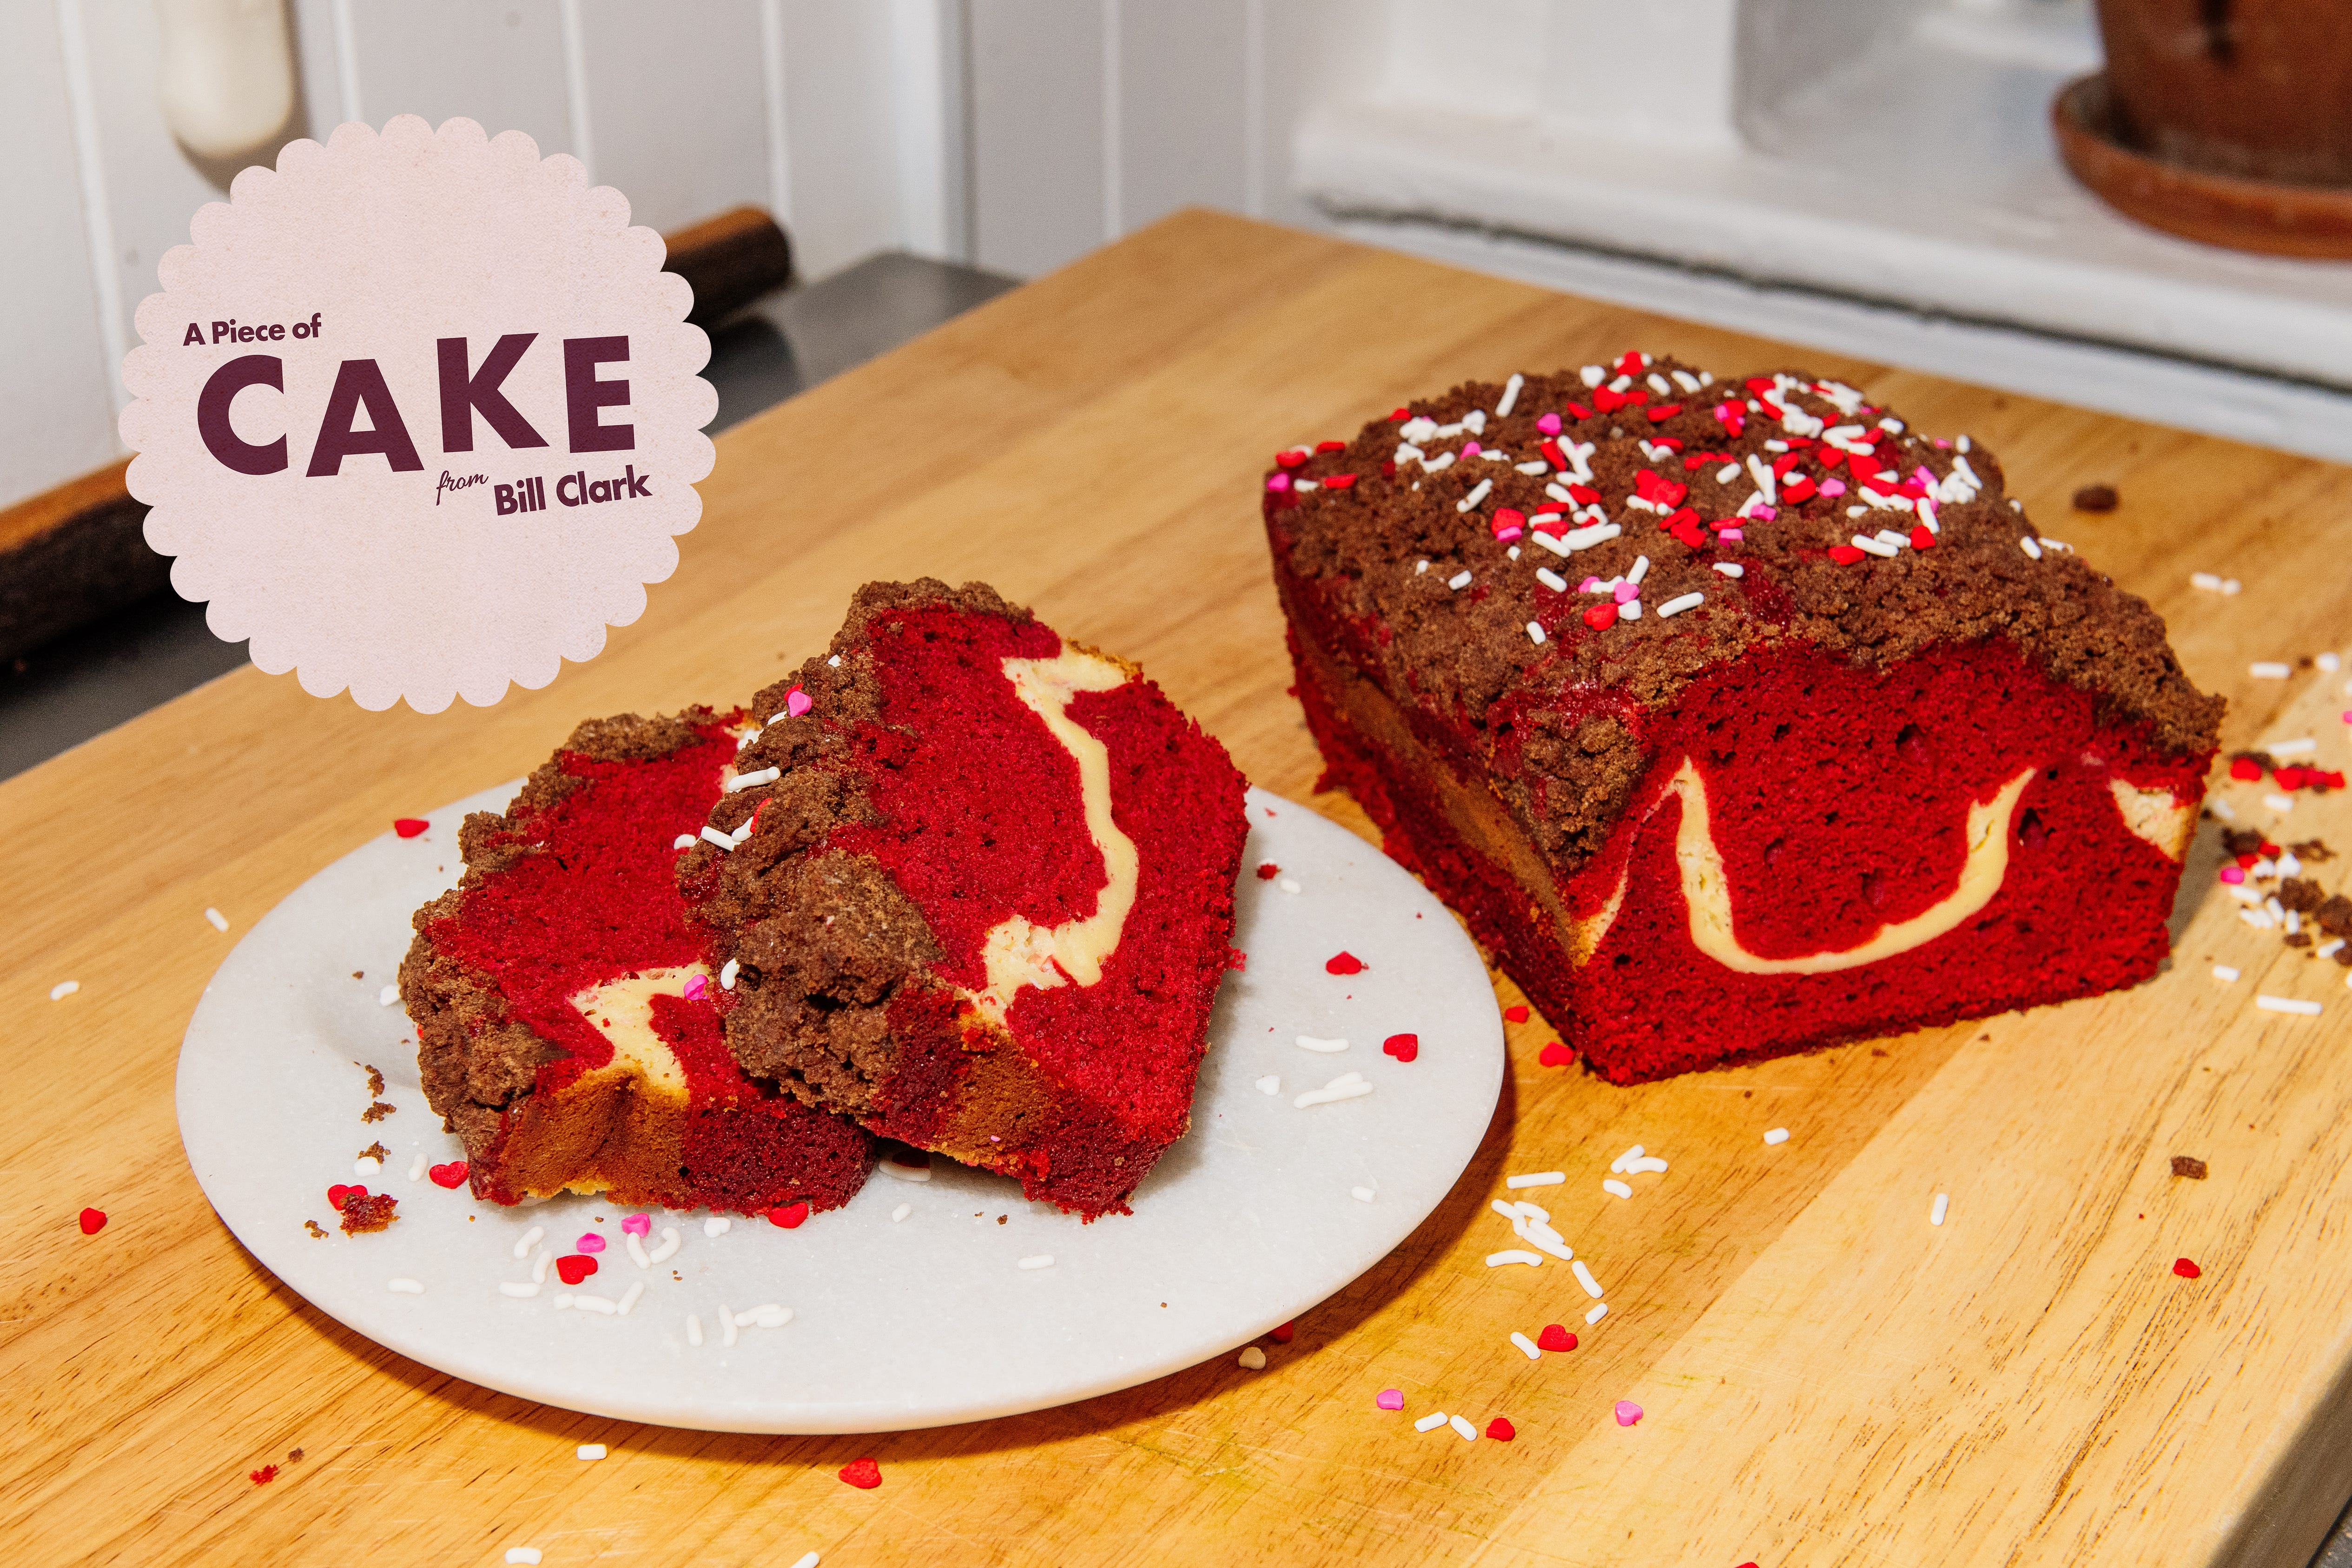 Red Velvet Cake - Cake Me Home Tonight